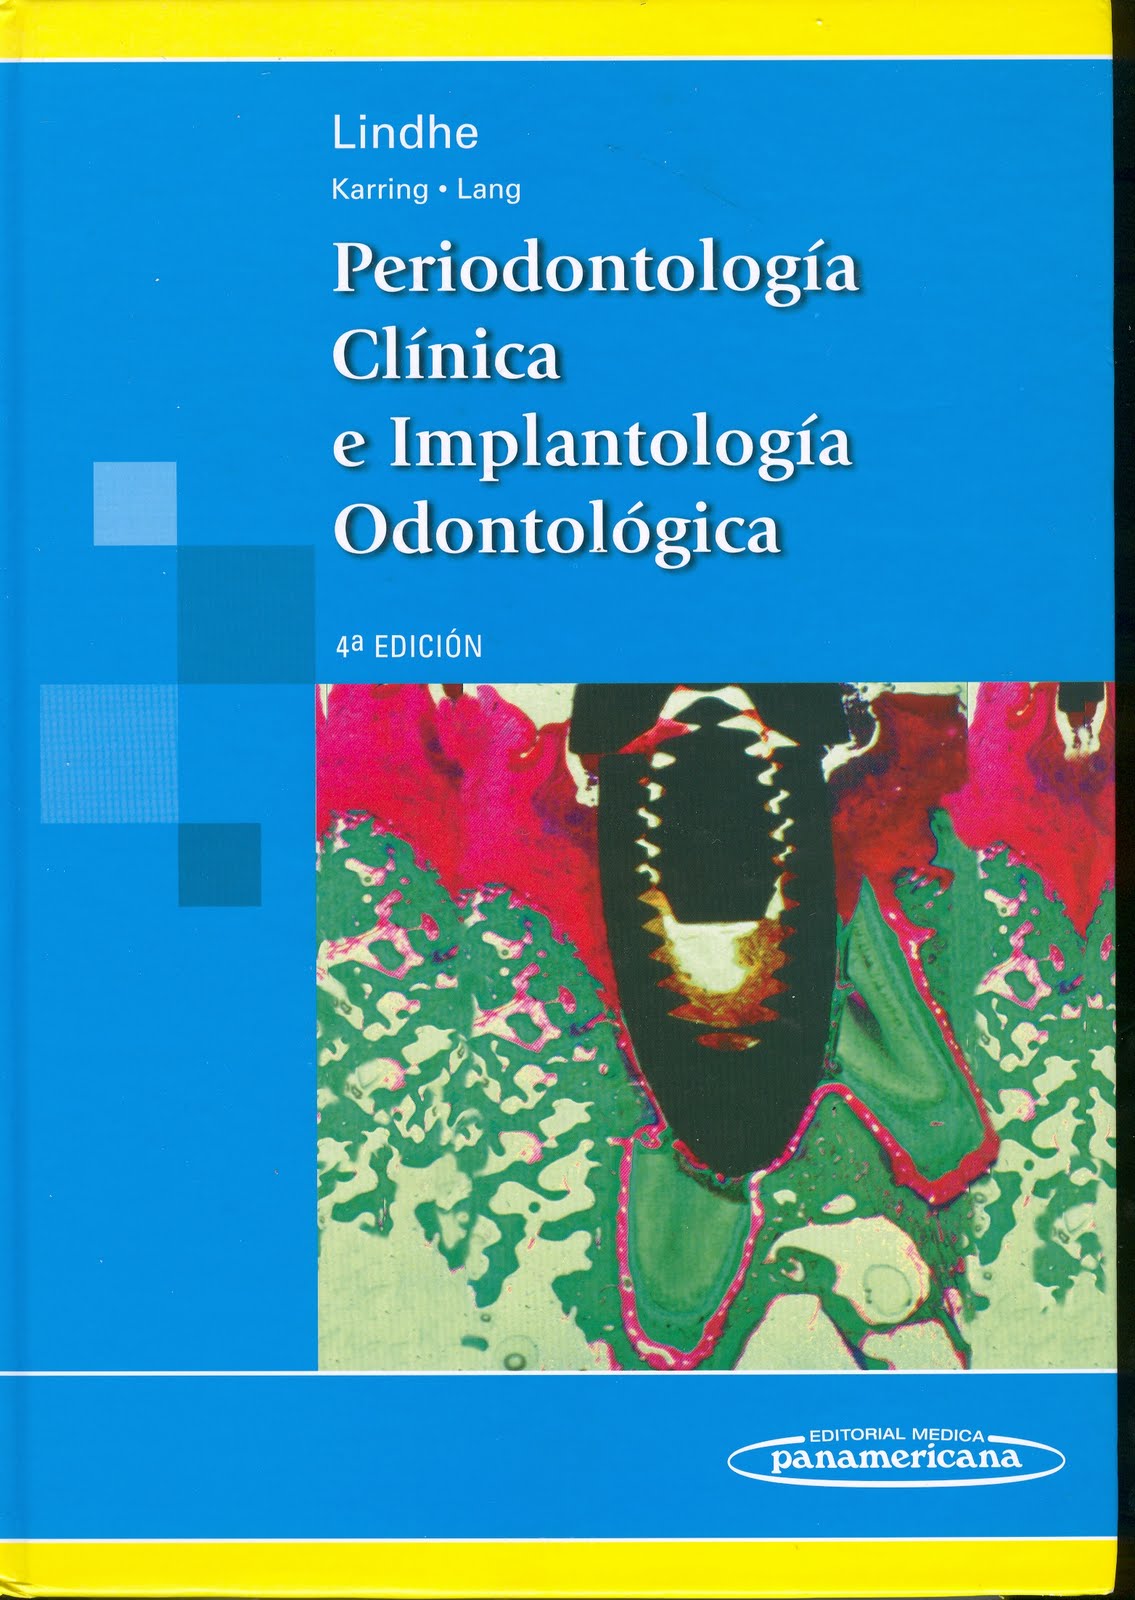 Periodontologia Clinica Carranza 10 Edicion Pdf Free